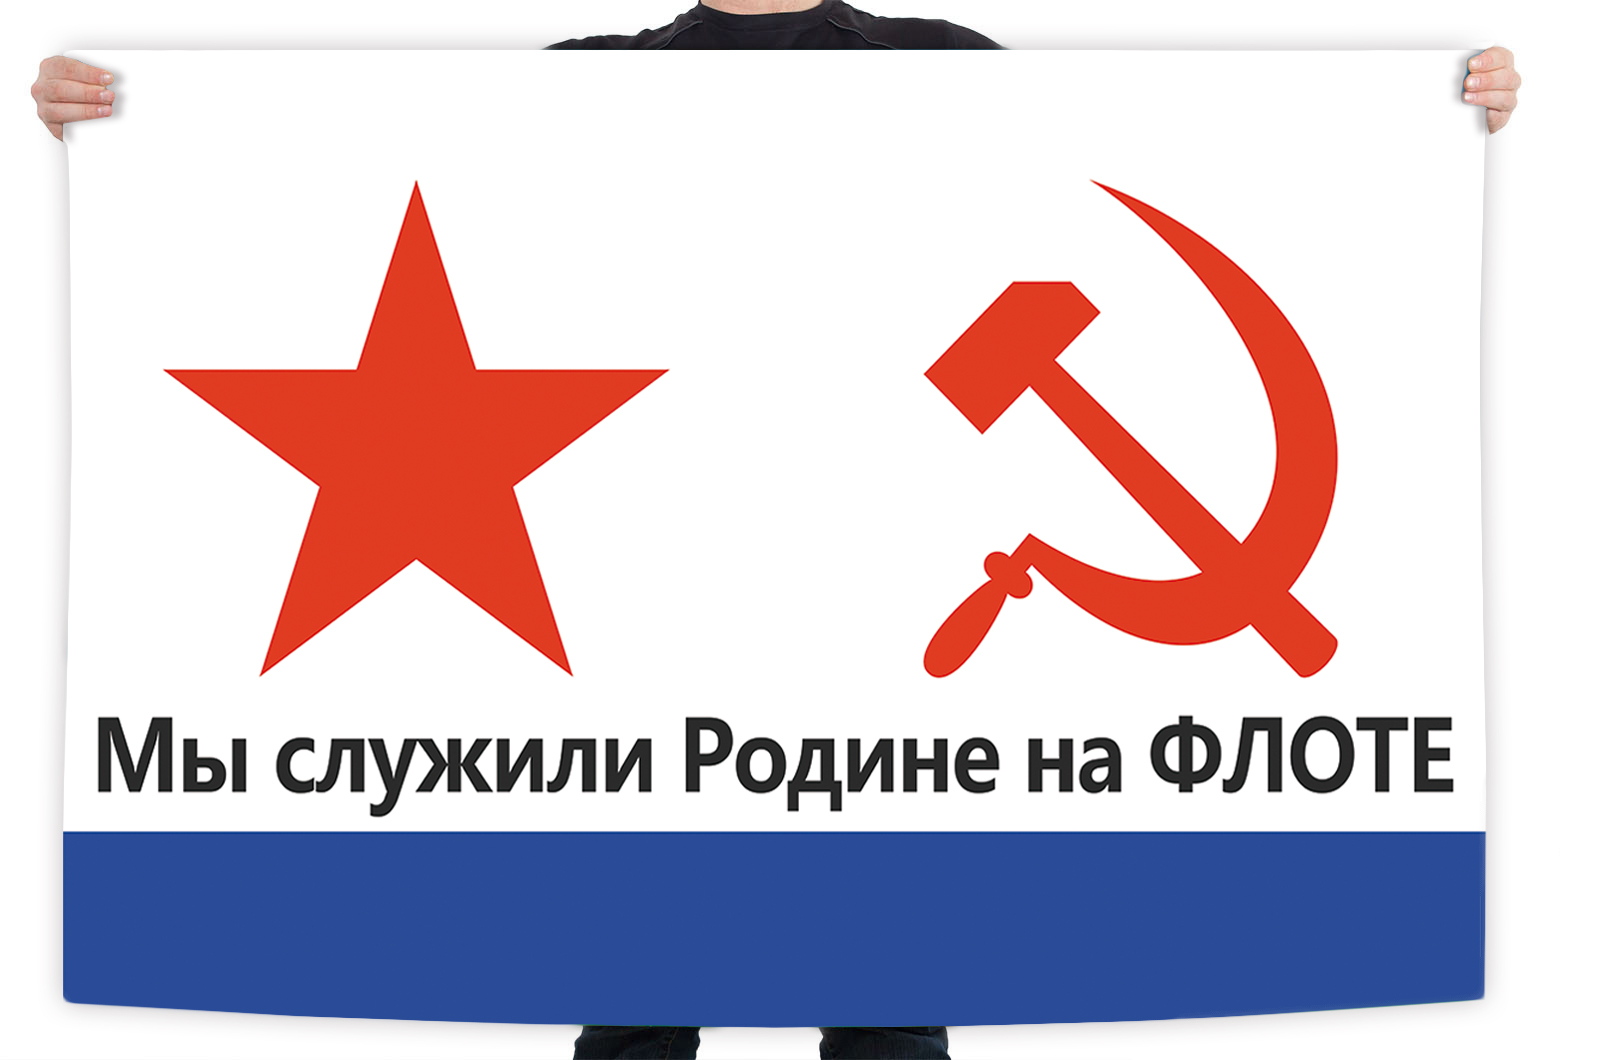 Флаг ВМФ СССР с лозунгом